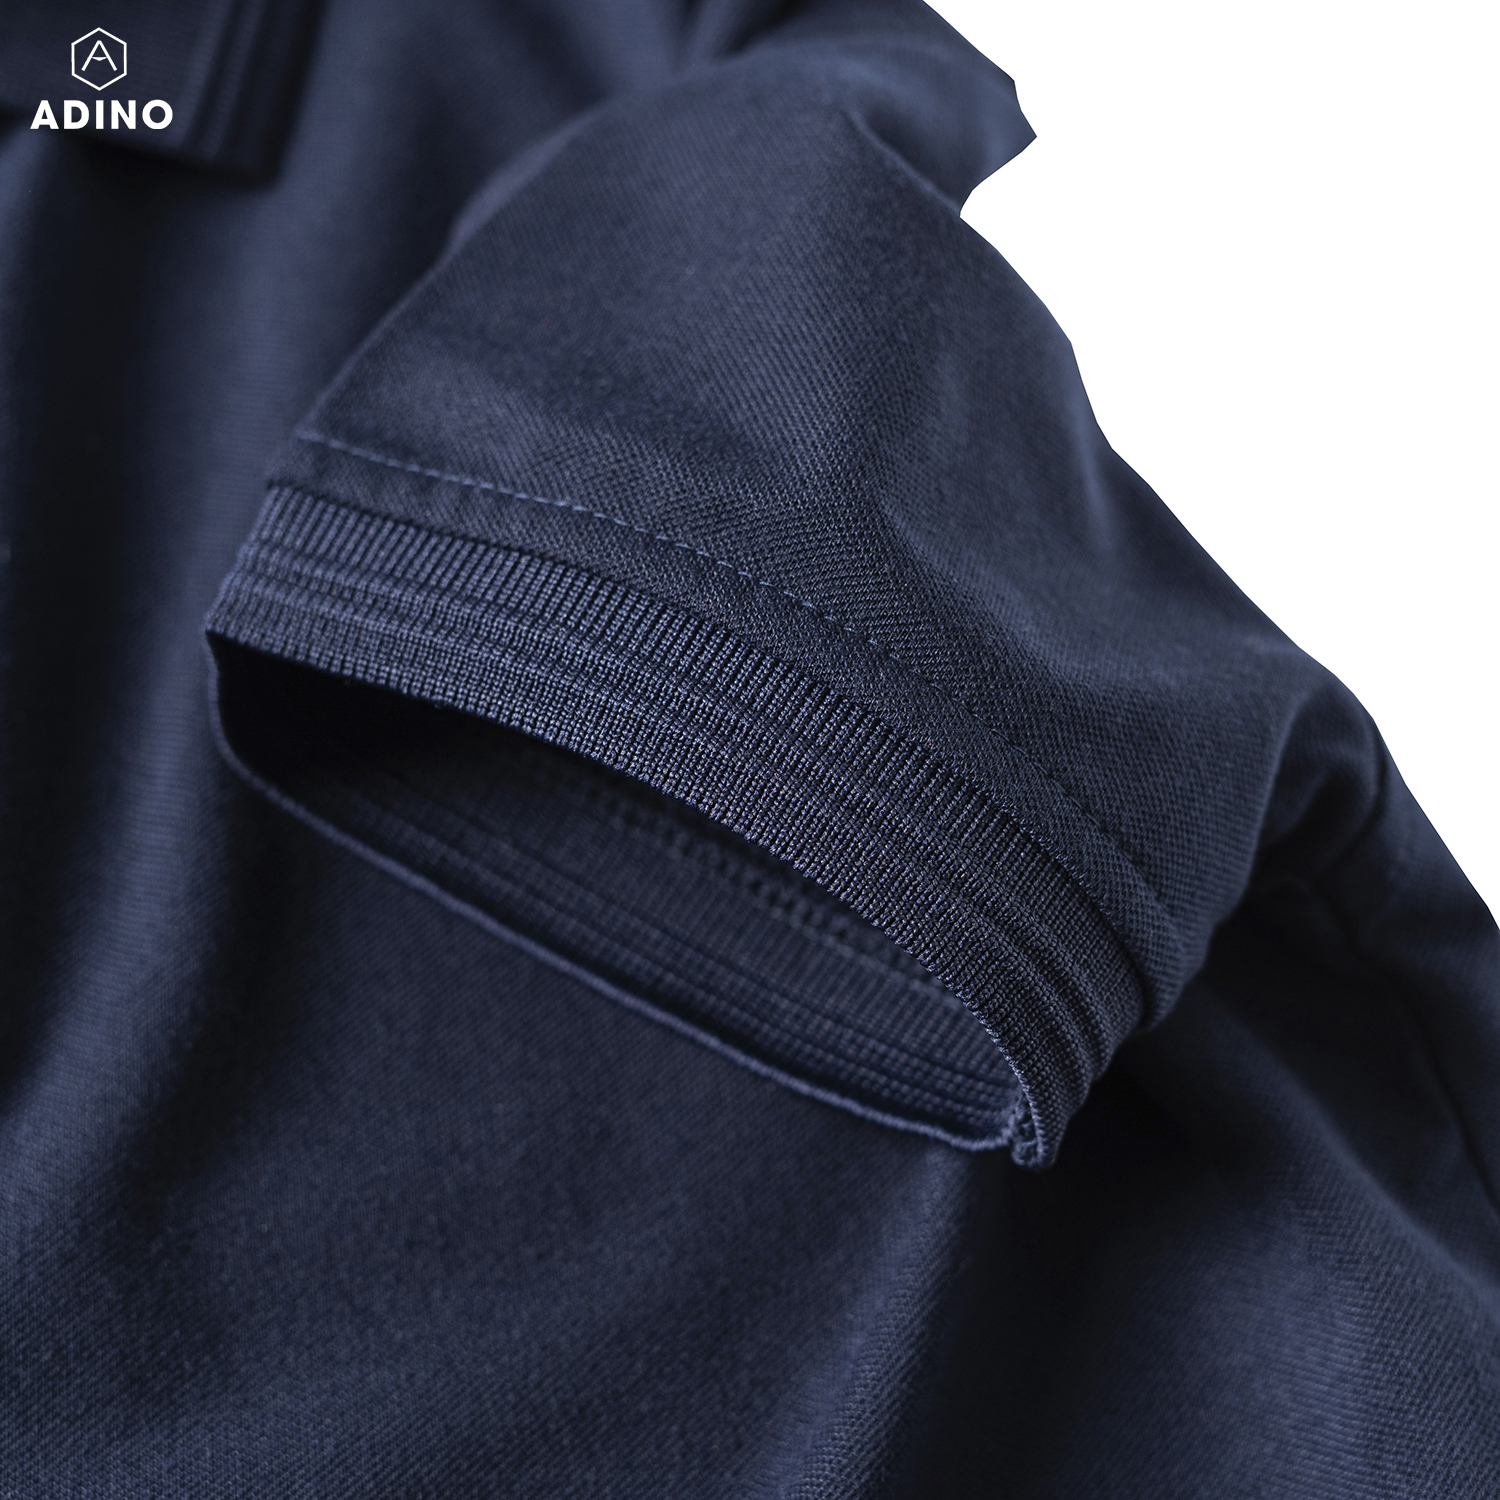 Áo polo nữ màu xanh đen phối viền chìm ADINO vải cotton polyester mềm dáng slimfit công sở hơi ôm trẻ trung APN03